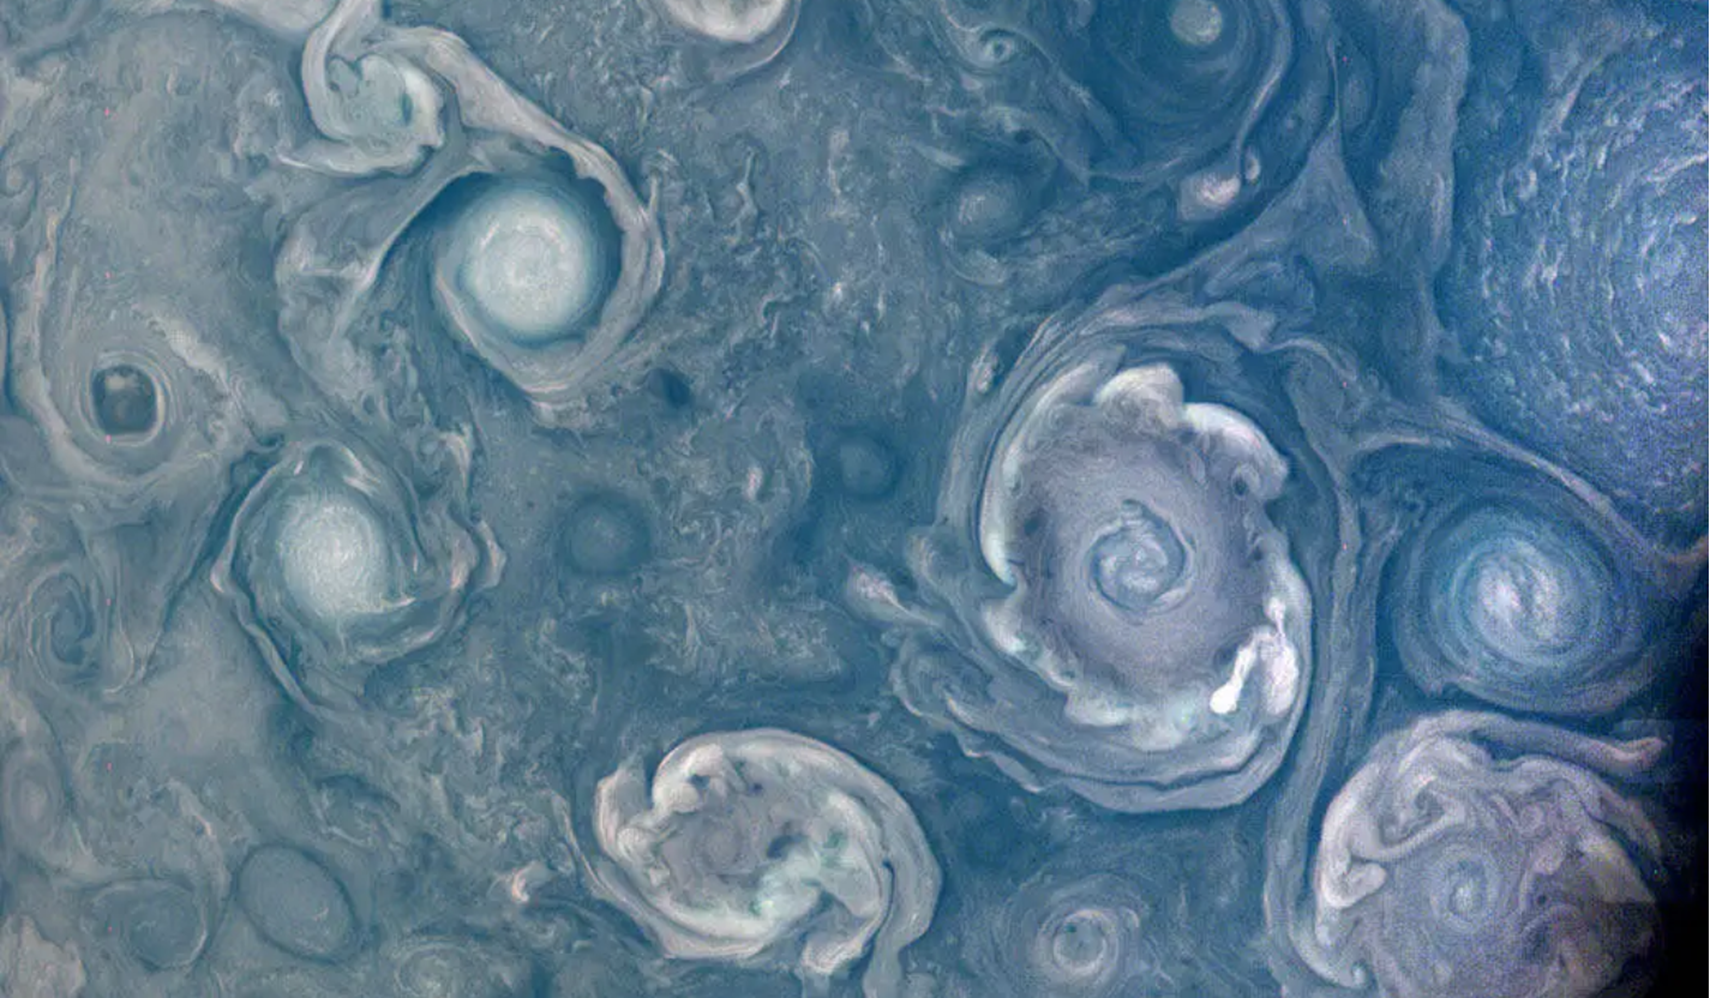 Lors de sa 54e orbite autour de Jupiter cette année, la sonde Juno de la Nasa nous a dévoilé un nouveau cliché de cette géante gazeuse et de son atmosphère tumultueuse, gouvernée par des cyclones géants. © Nasa, JPL-Caltech, SwRI, MSSS, Brian Swift